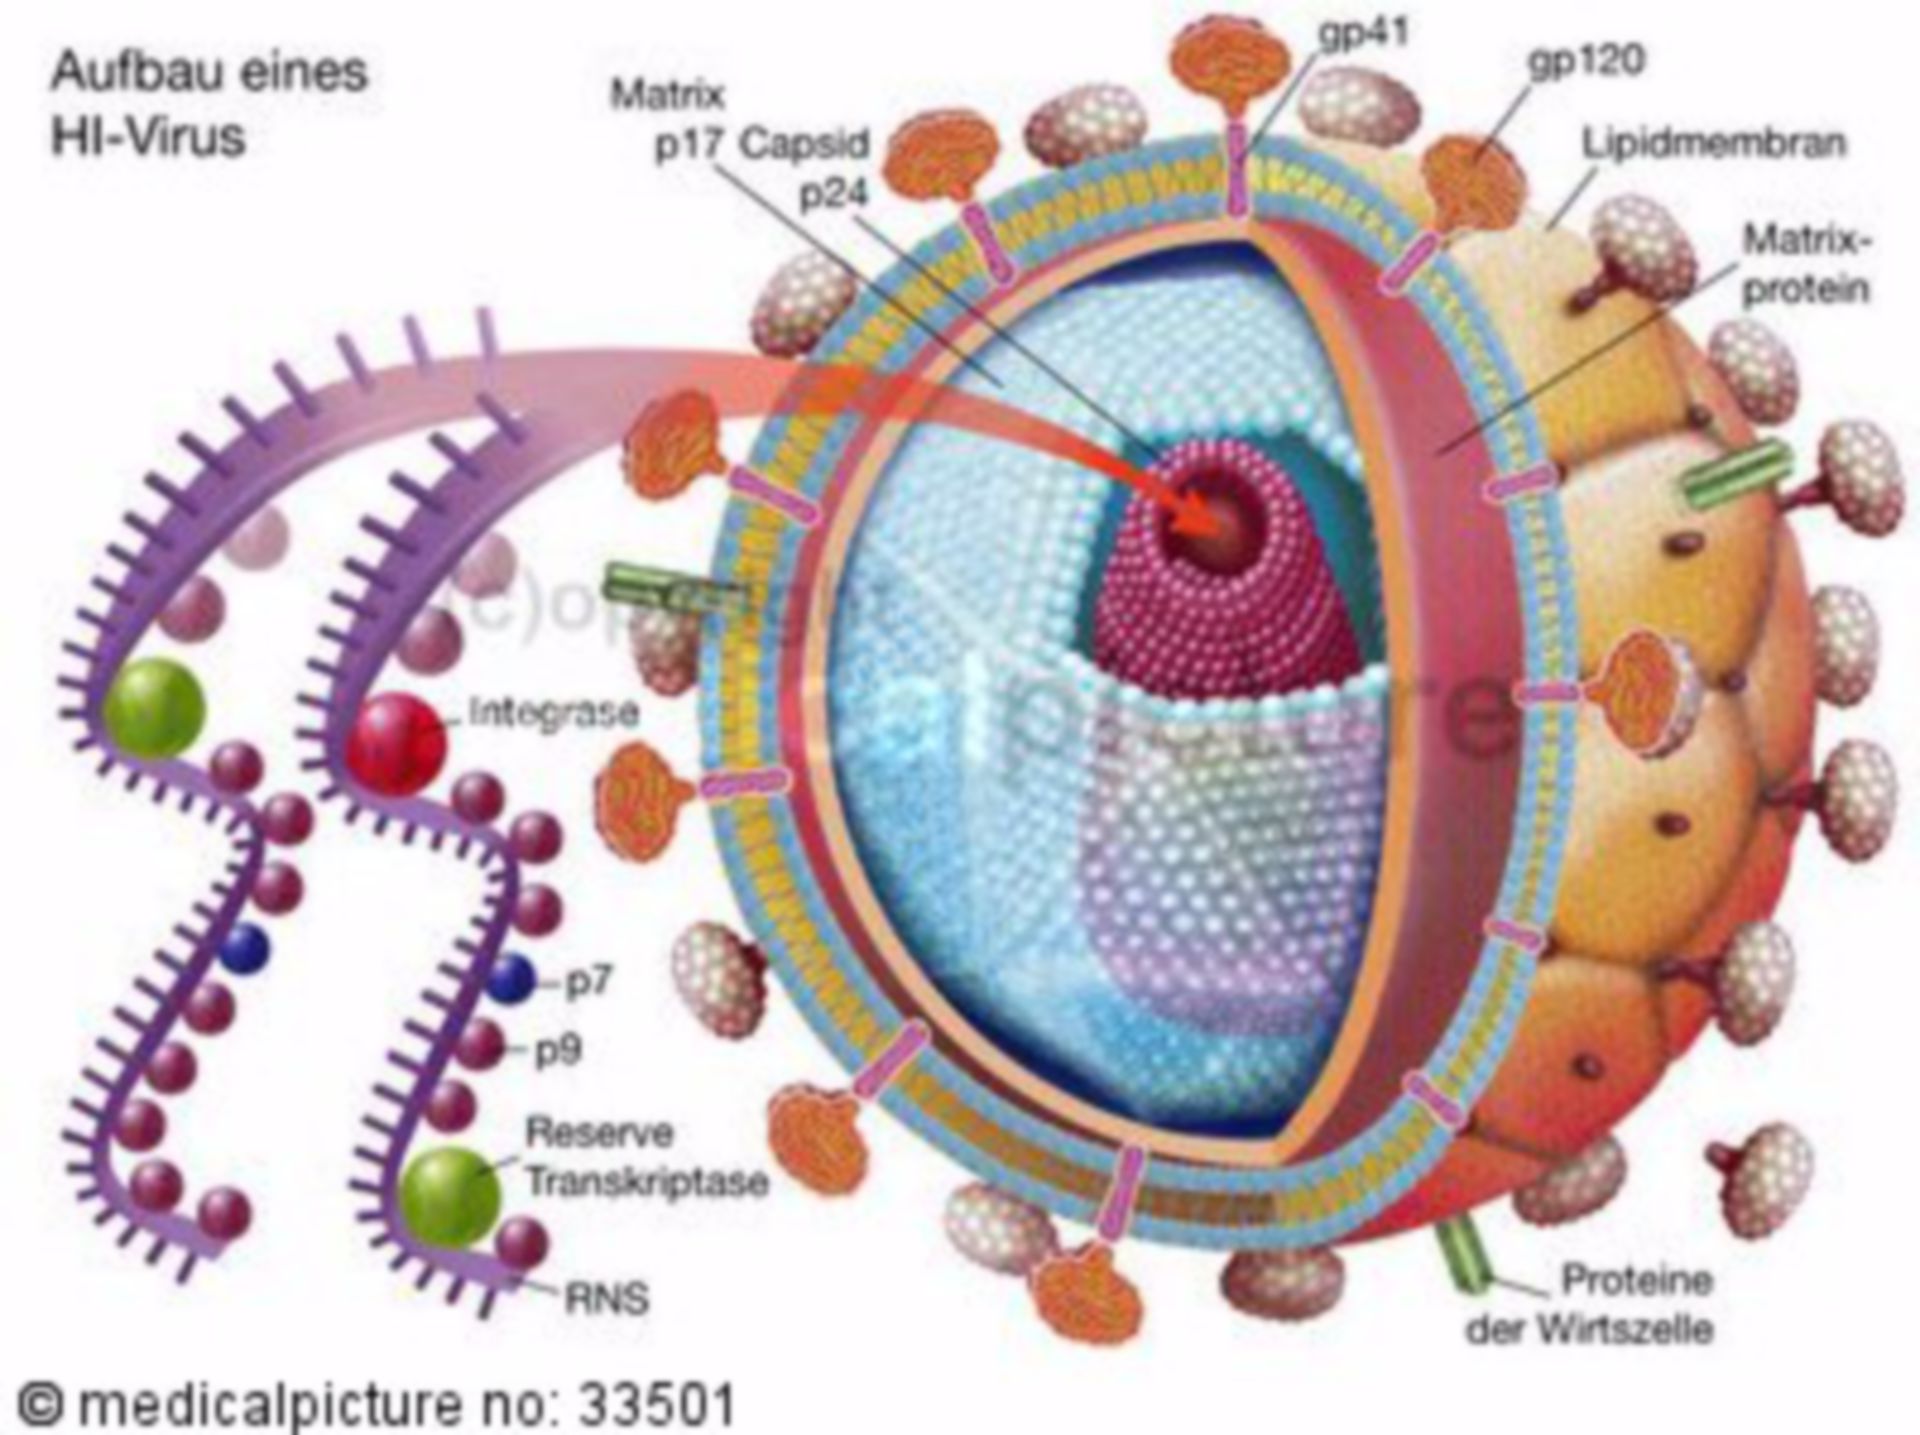 Aufbau des HI-Virus